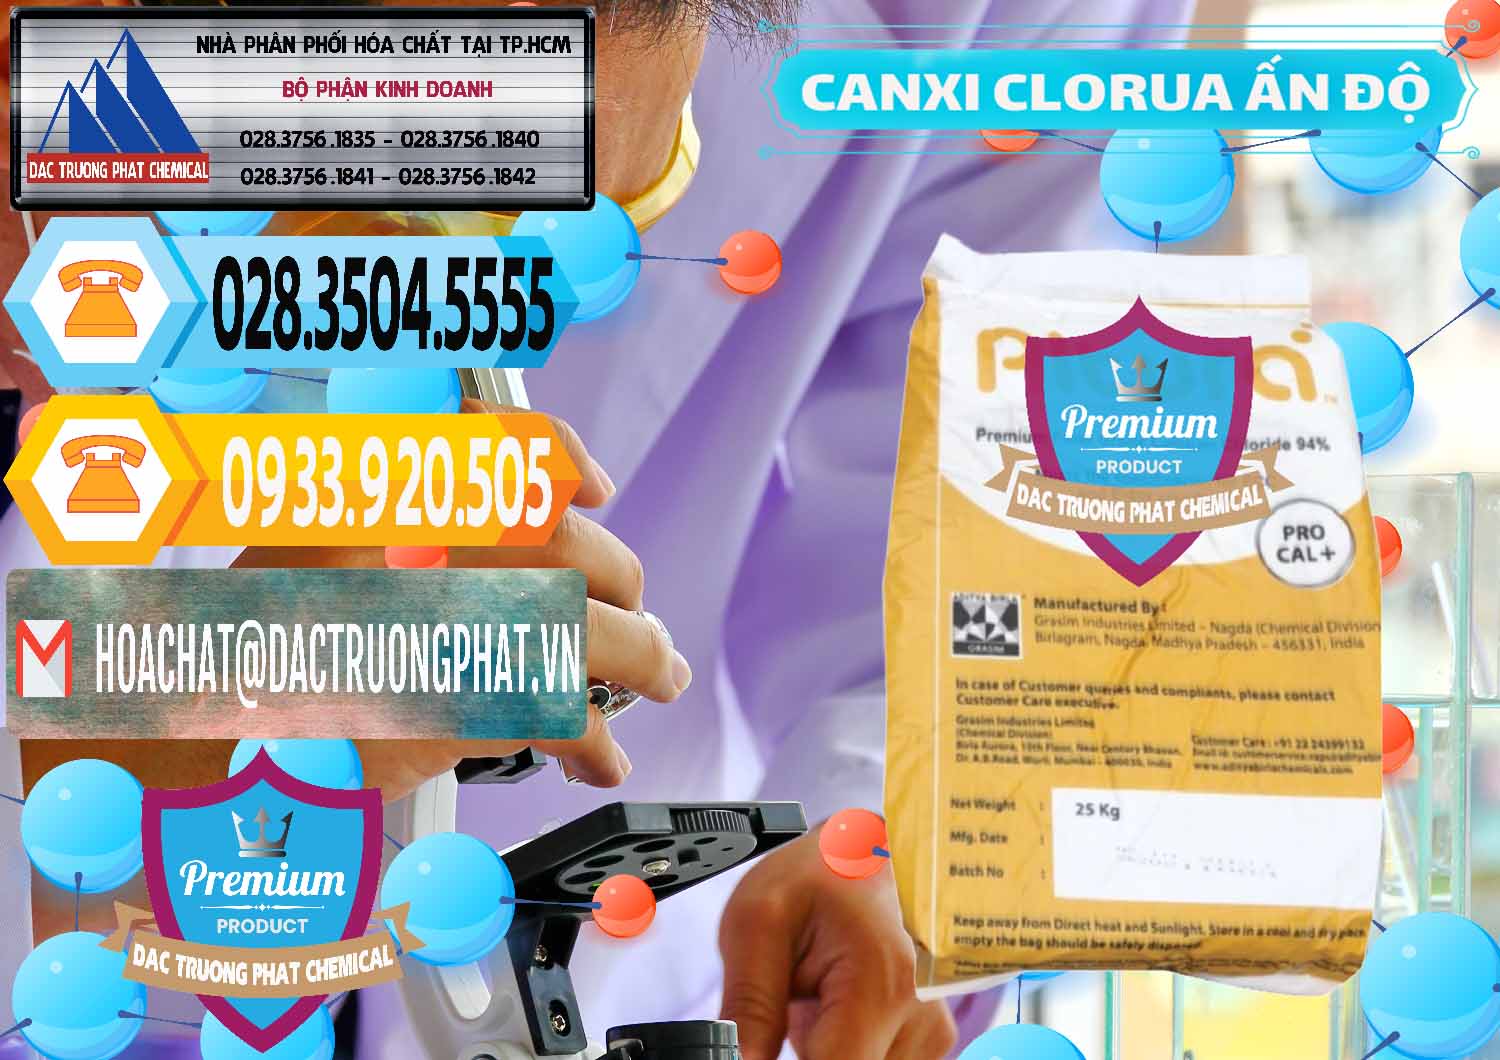 Đơn vị phân phối và bán CaCl2 – Canxi Clorua Food Grade Altura Aditya Birla Grasim Ấn Độ India - 0436 - Cty bán - cung cấp hóa chất tại TP.HCM - hoachattayrua.net